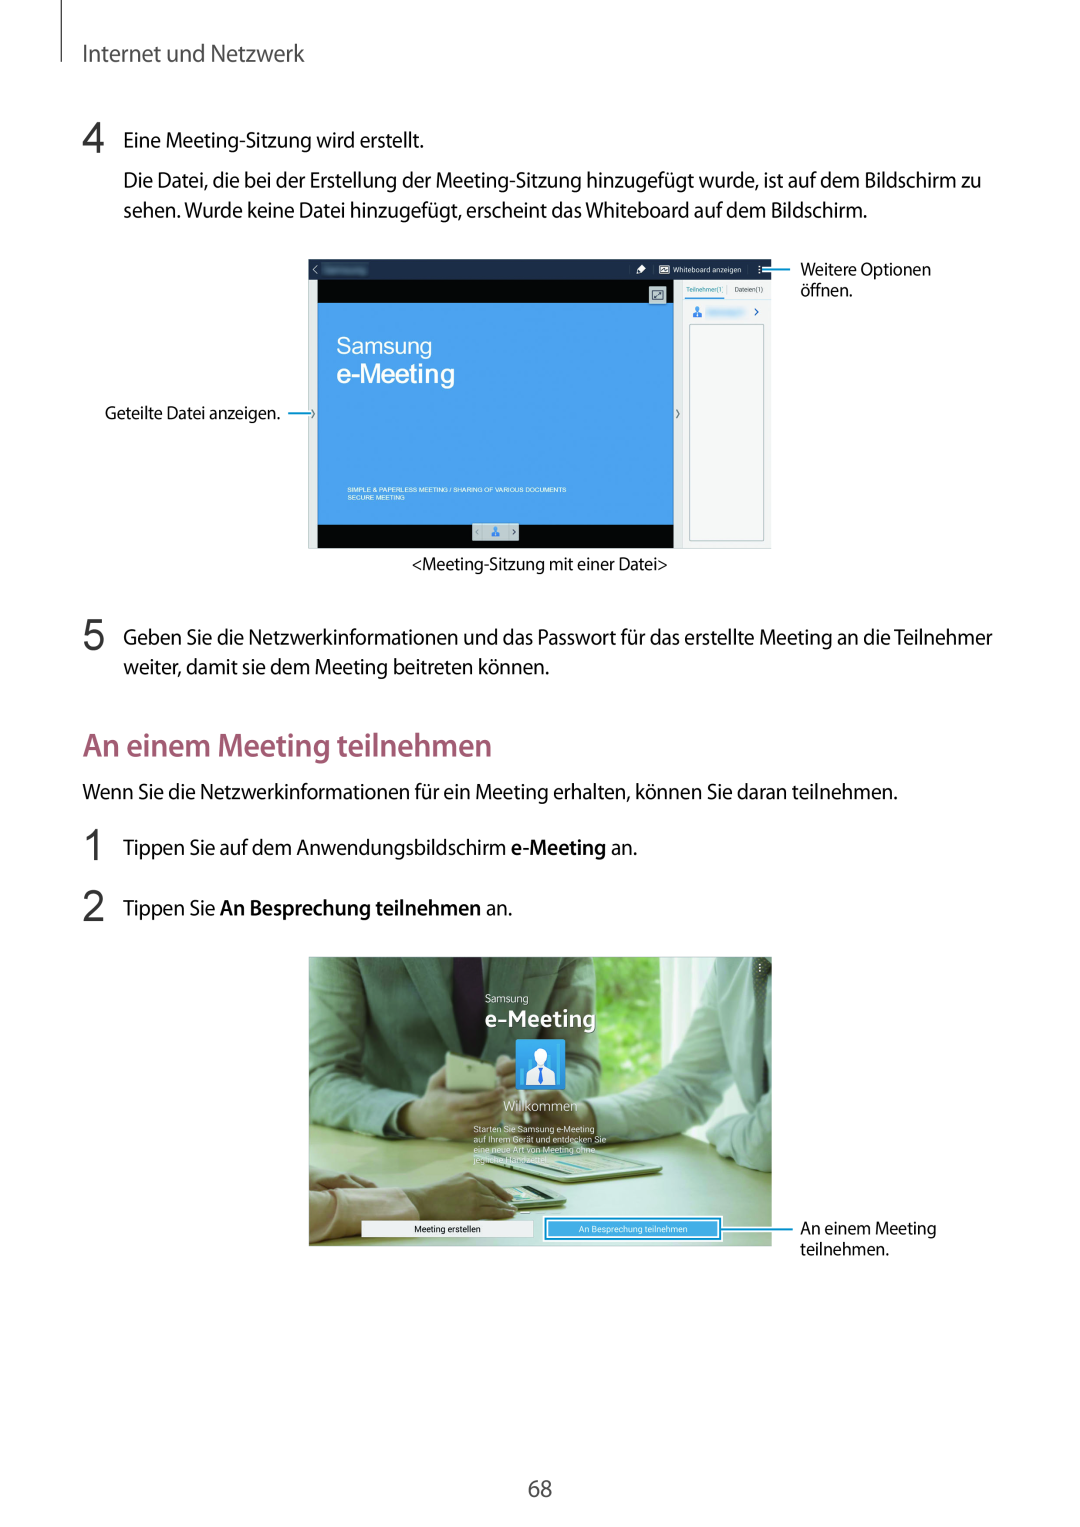 Samsung SM-P9000ZKAATO manual An einem Meeting teilnehmen, Tippen Sie An Besprechung teilnehmen an, Internet und Netzwerk 